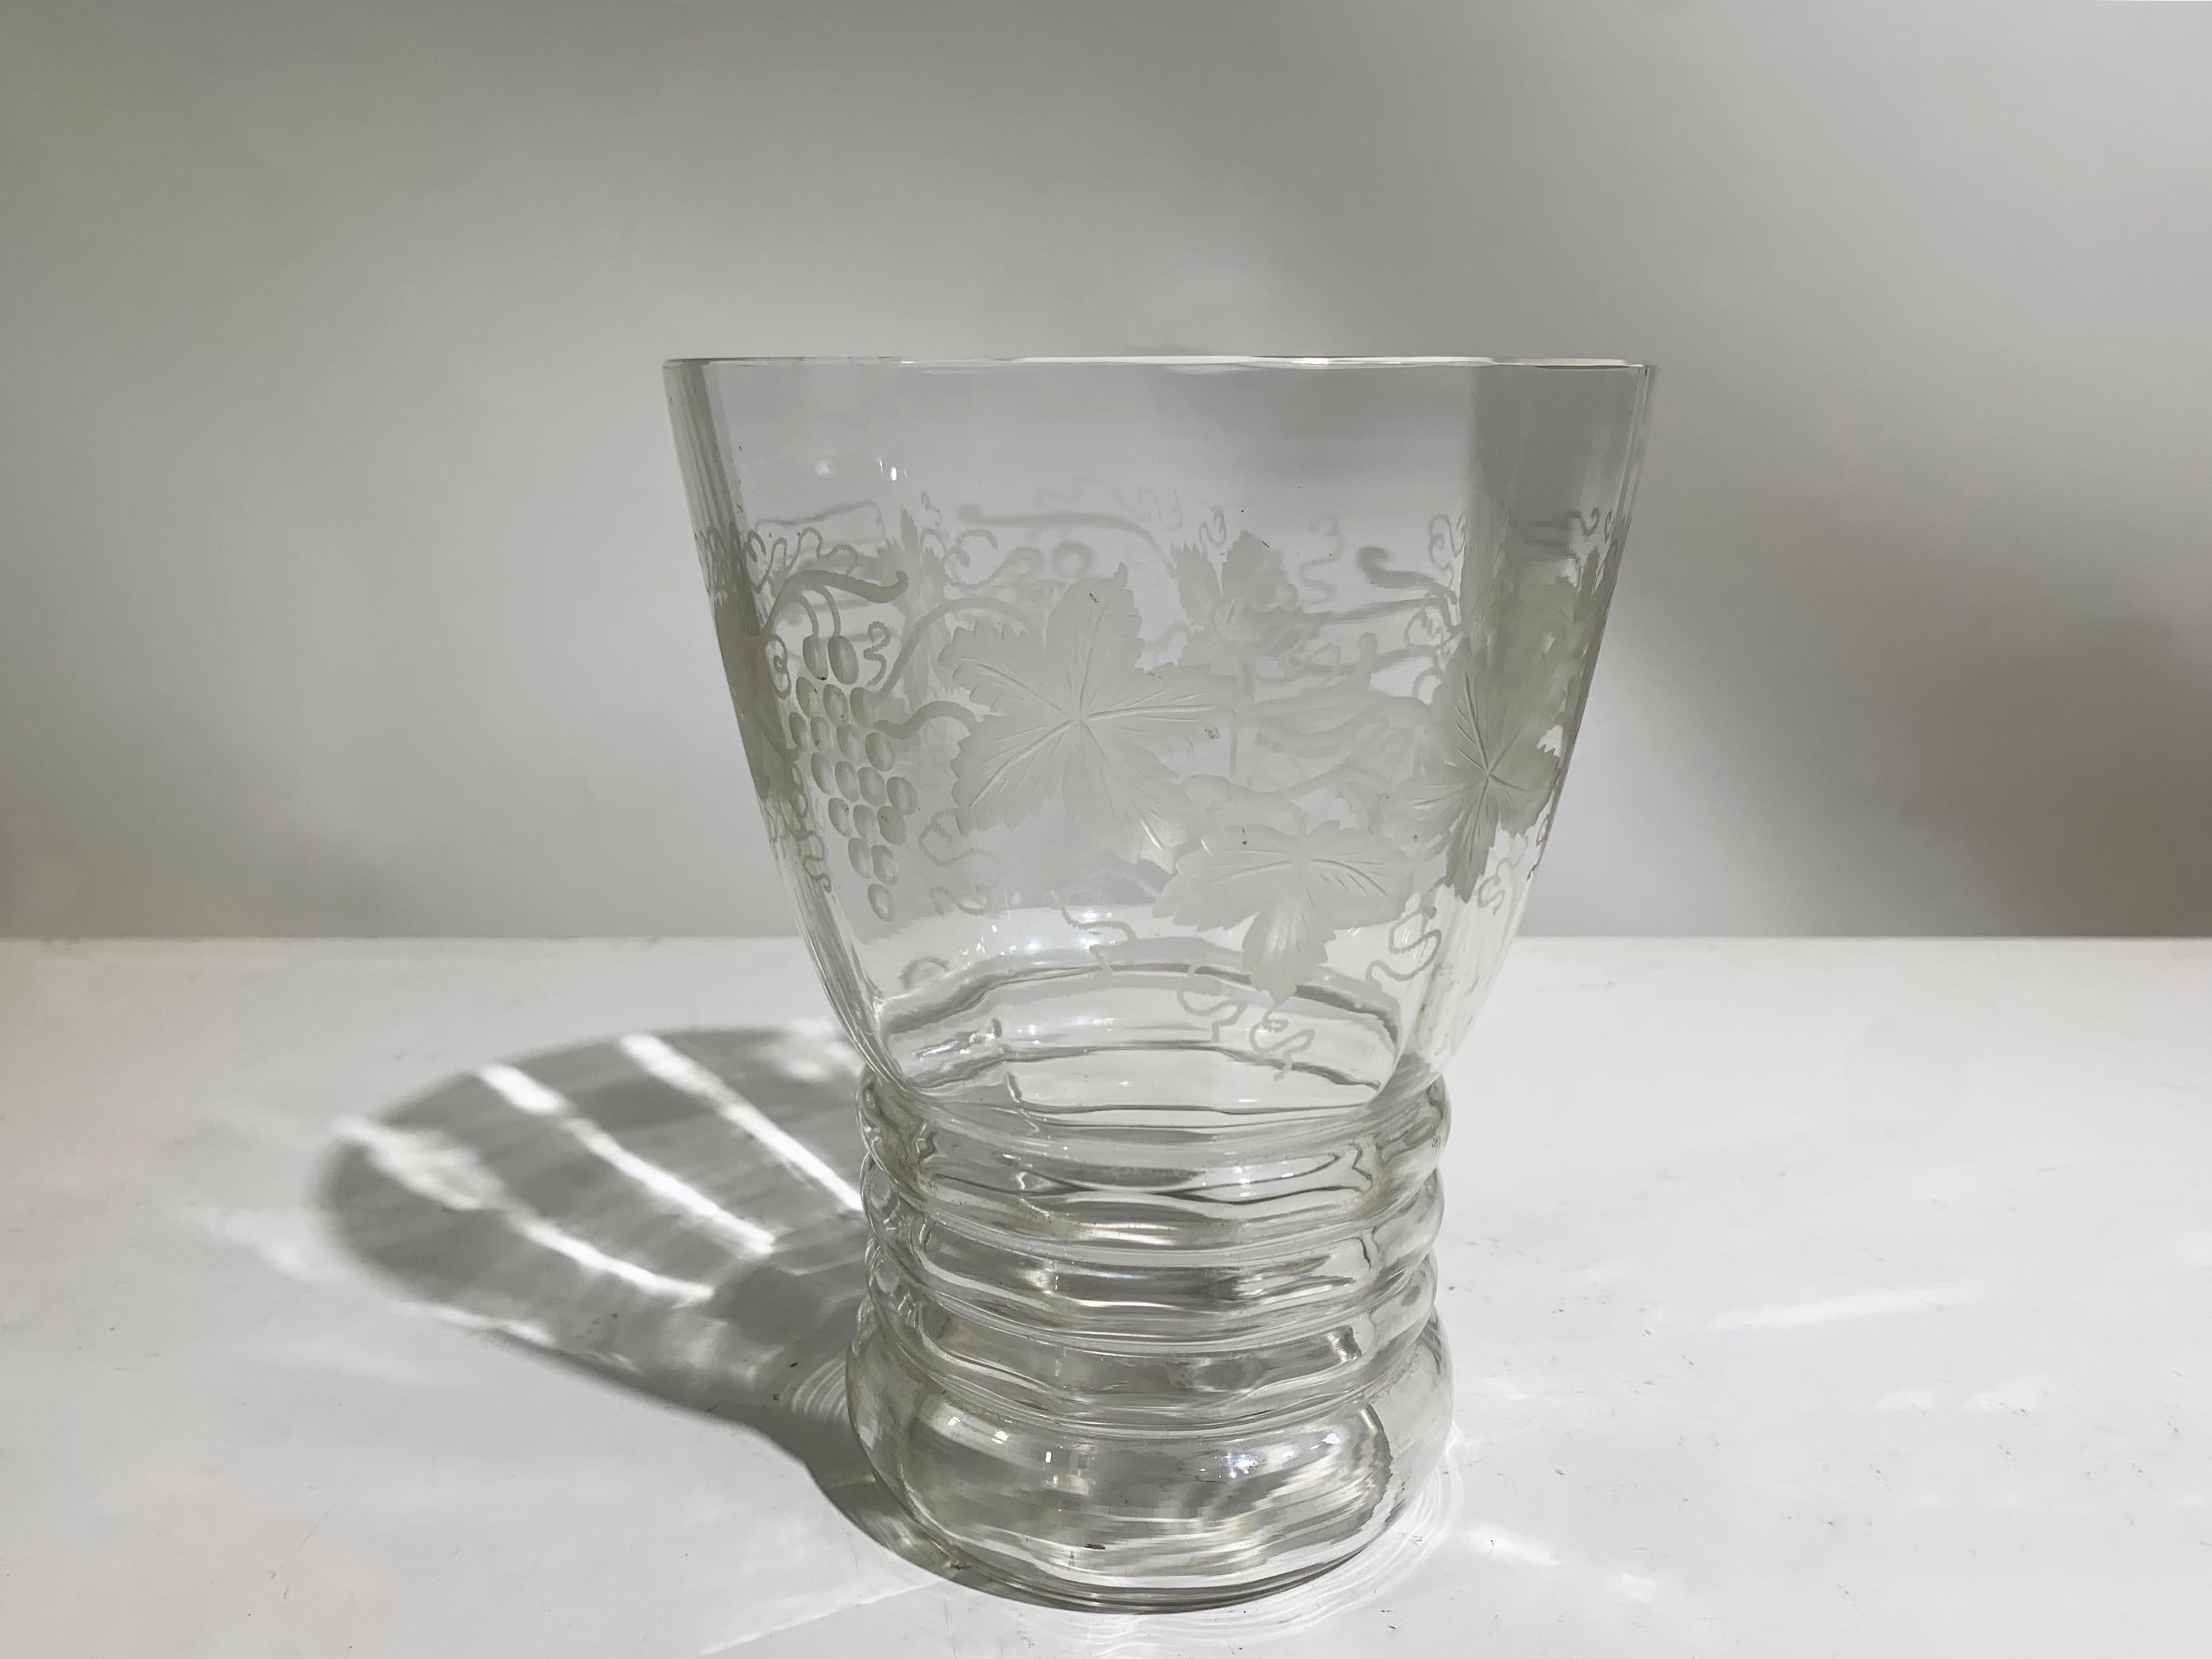 Vase aus französischem Vintage-Kristall mit zarter Säureätzung, die ein elegantes Motiv aus Trauben und Weinblättern zeigt, das die Vase umgibt.
